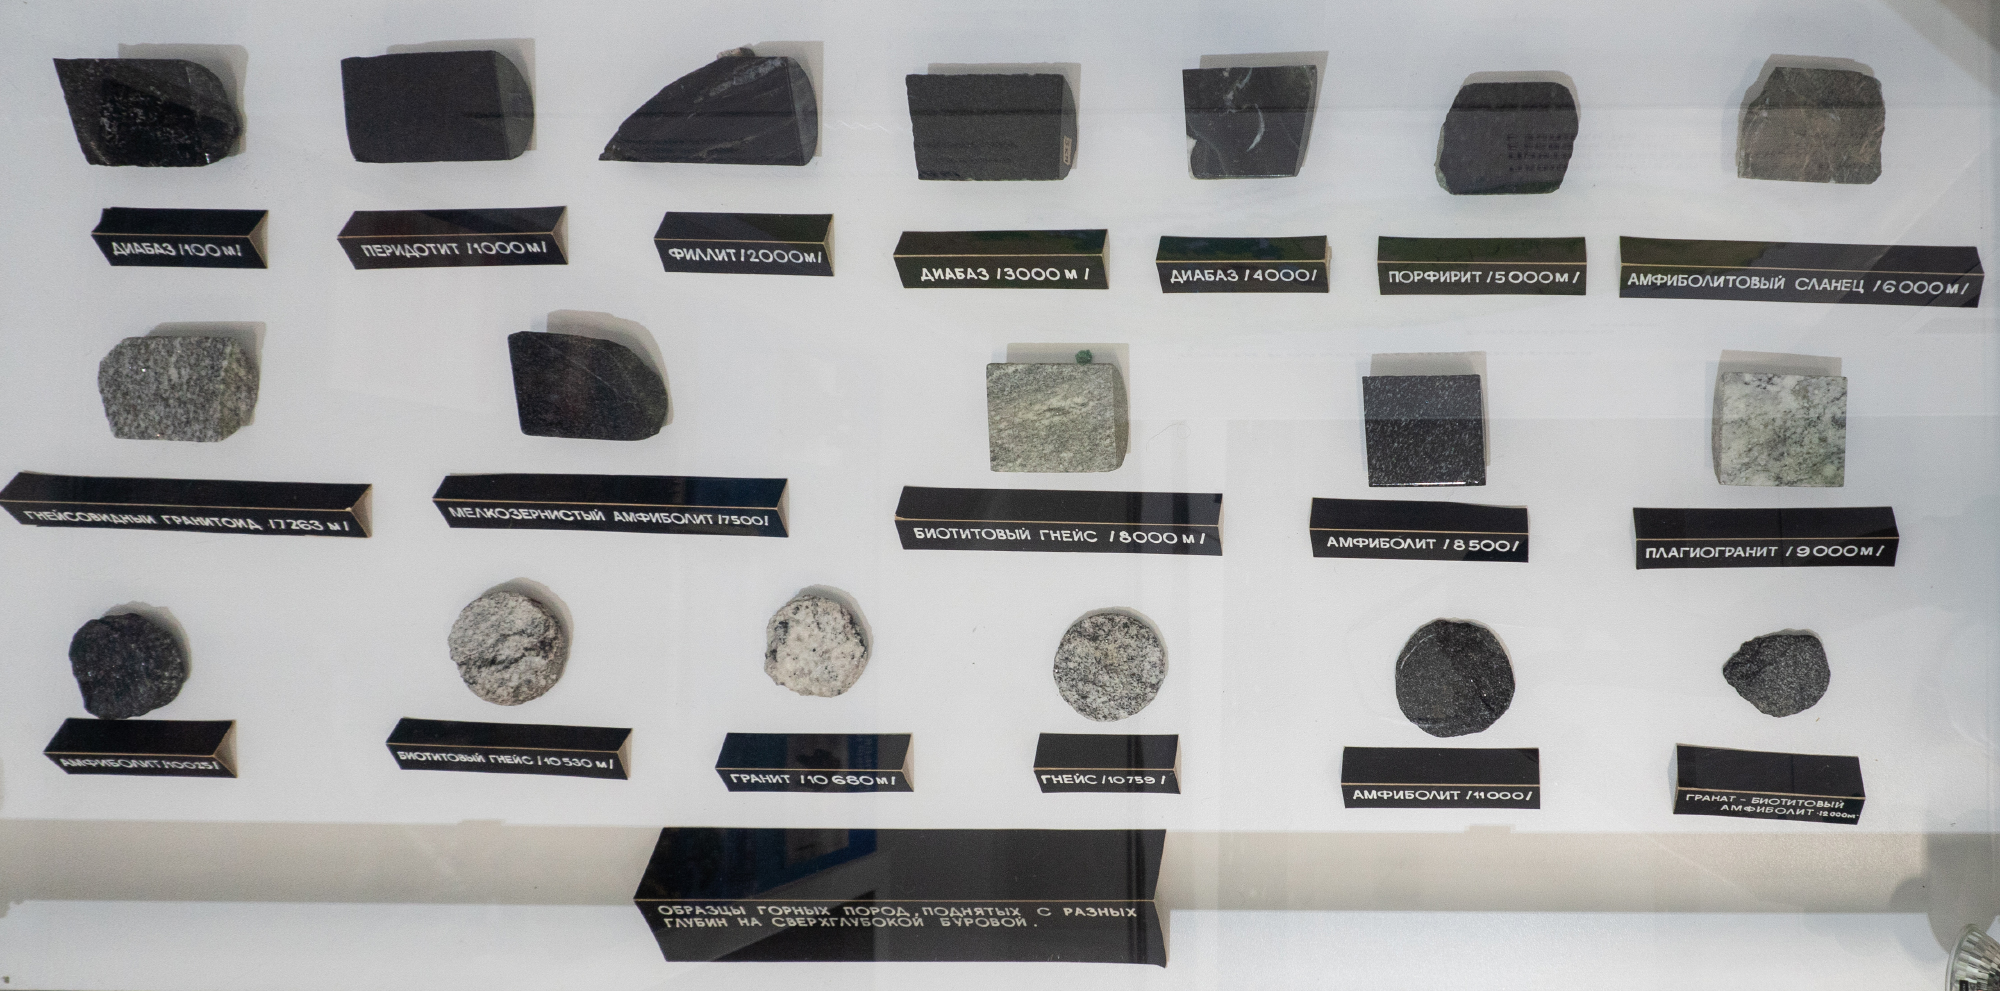 Еще одна интересная коллекция краеведческого музея — образцы горных пород из Кольской сверхглубокой скважины. Их очень аккуратно доставали, чтобы из⁠-⁠за давления камни не превратились в пыль